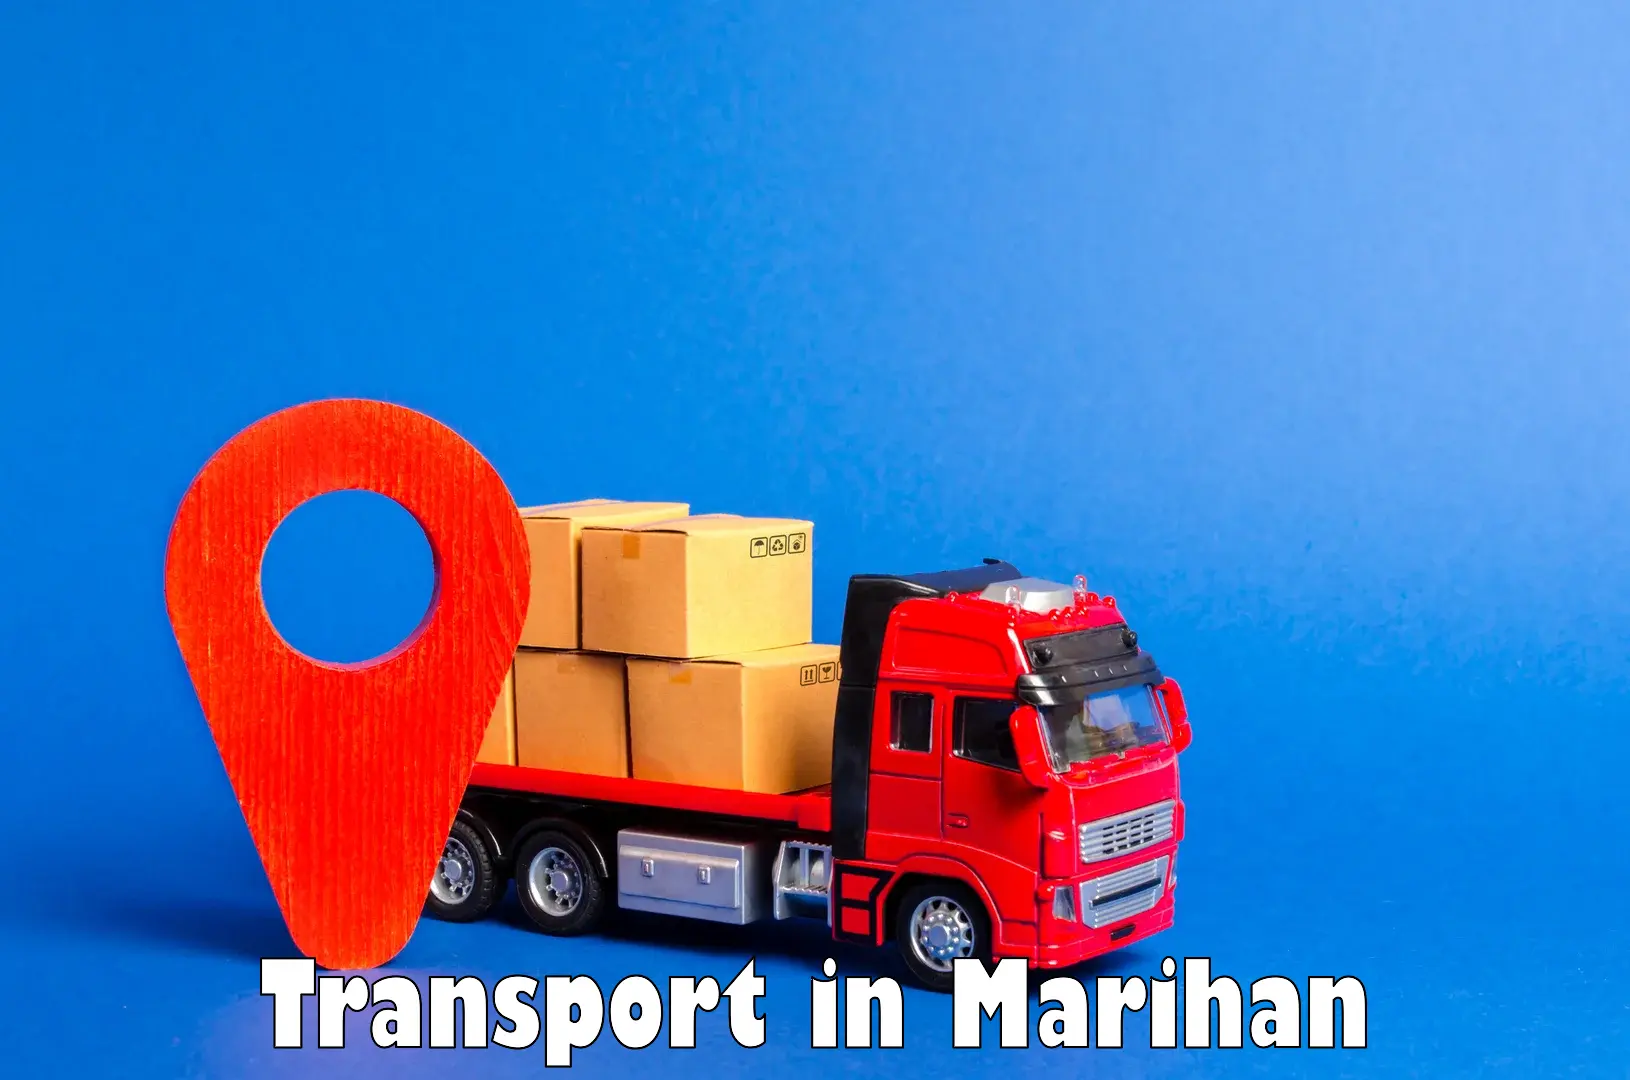 Transportation solution services in Marihan